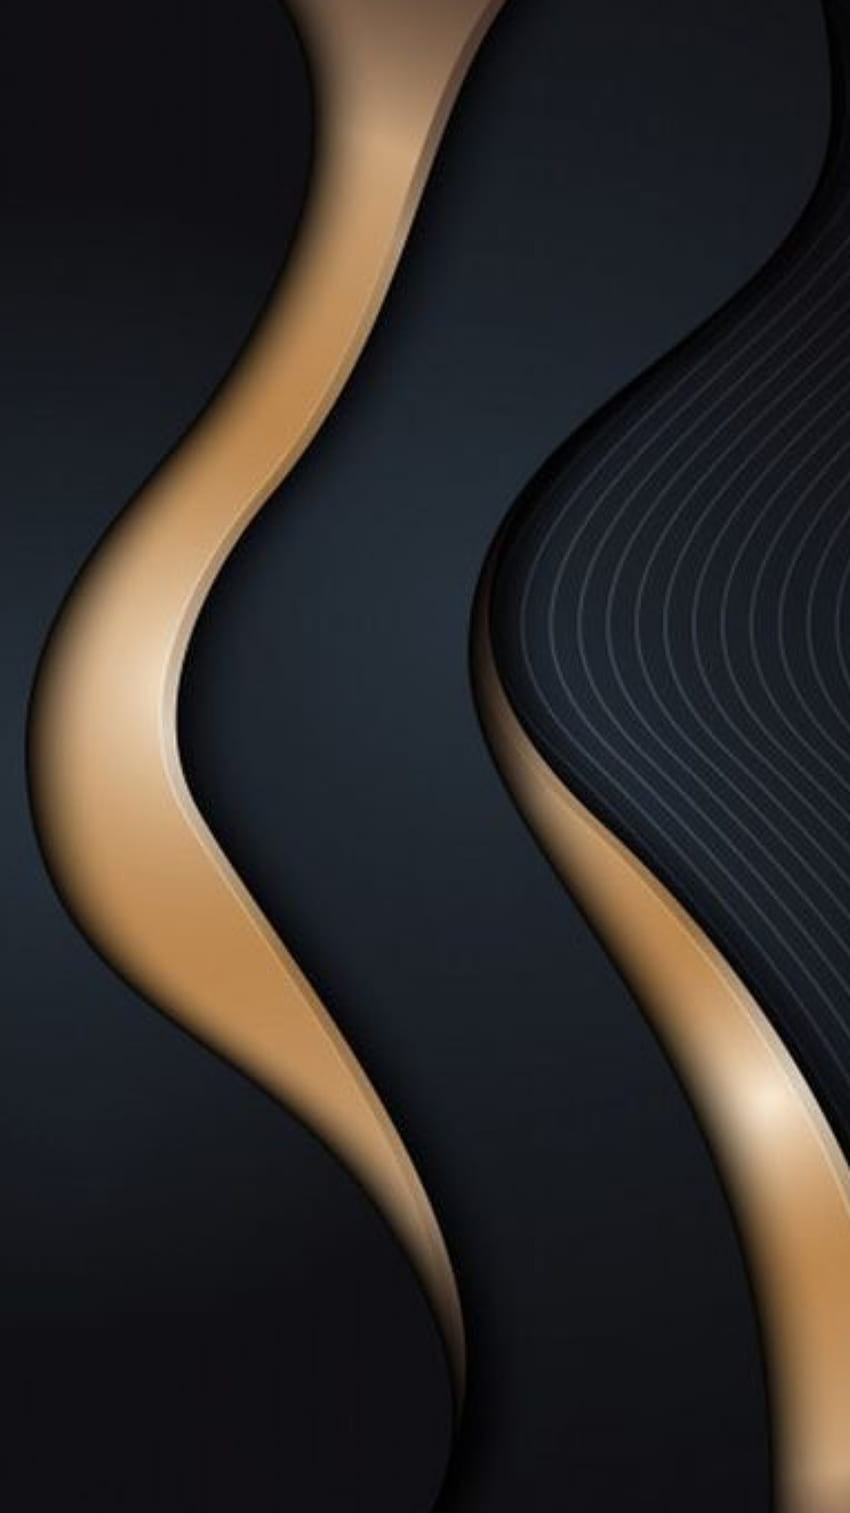 グラフィック ブラック ゴールド 3 d、波、曲線、素材、モダン、紙、テクスチャ、デザイン、レイヤー、パターン、抽象 HD電話の壁紙